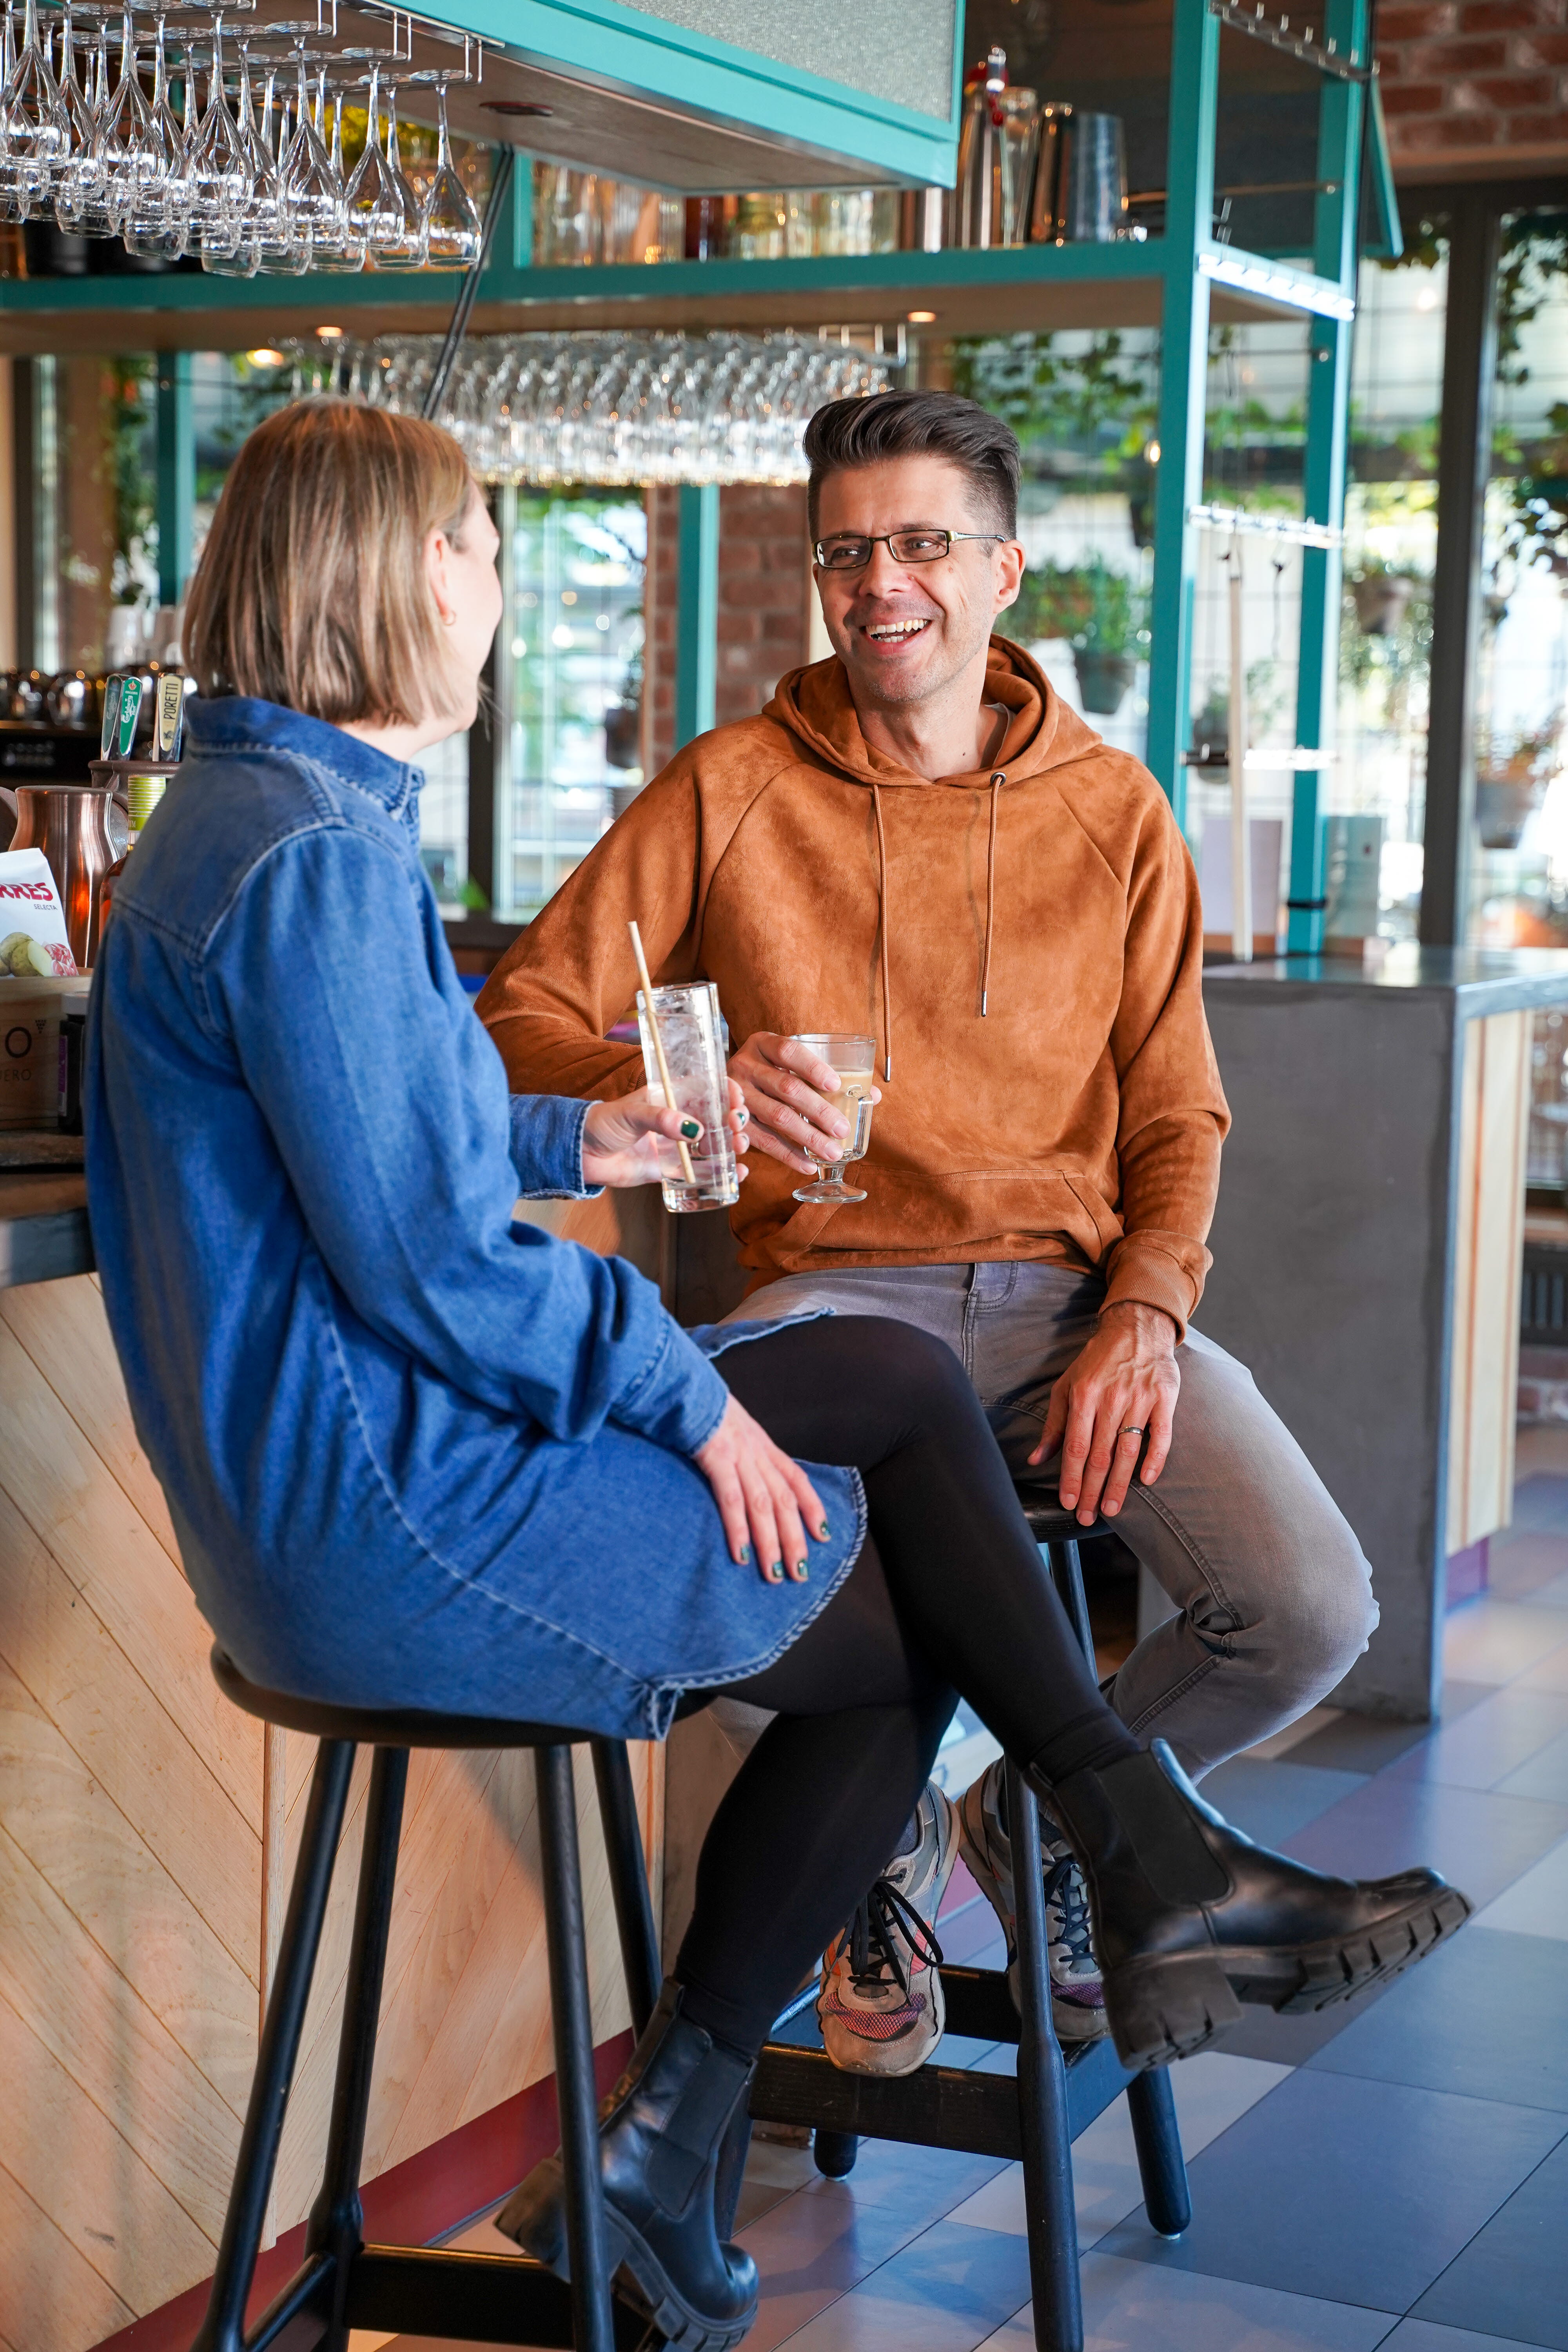 Närbild på två personer som sitter vid bardisken och dricker gott.